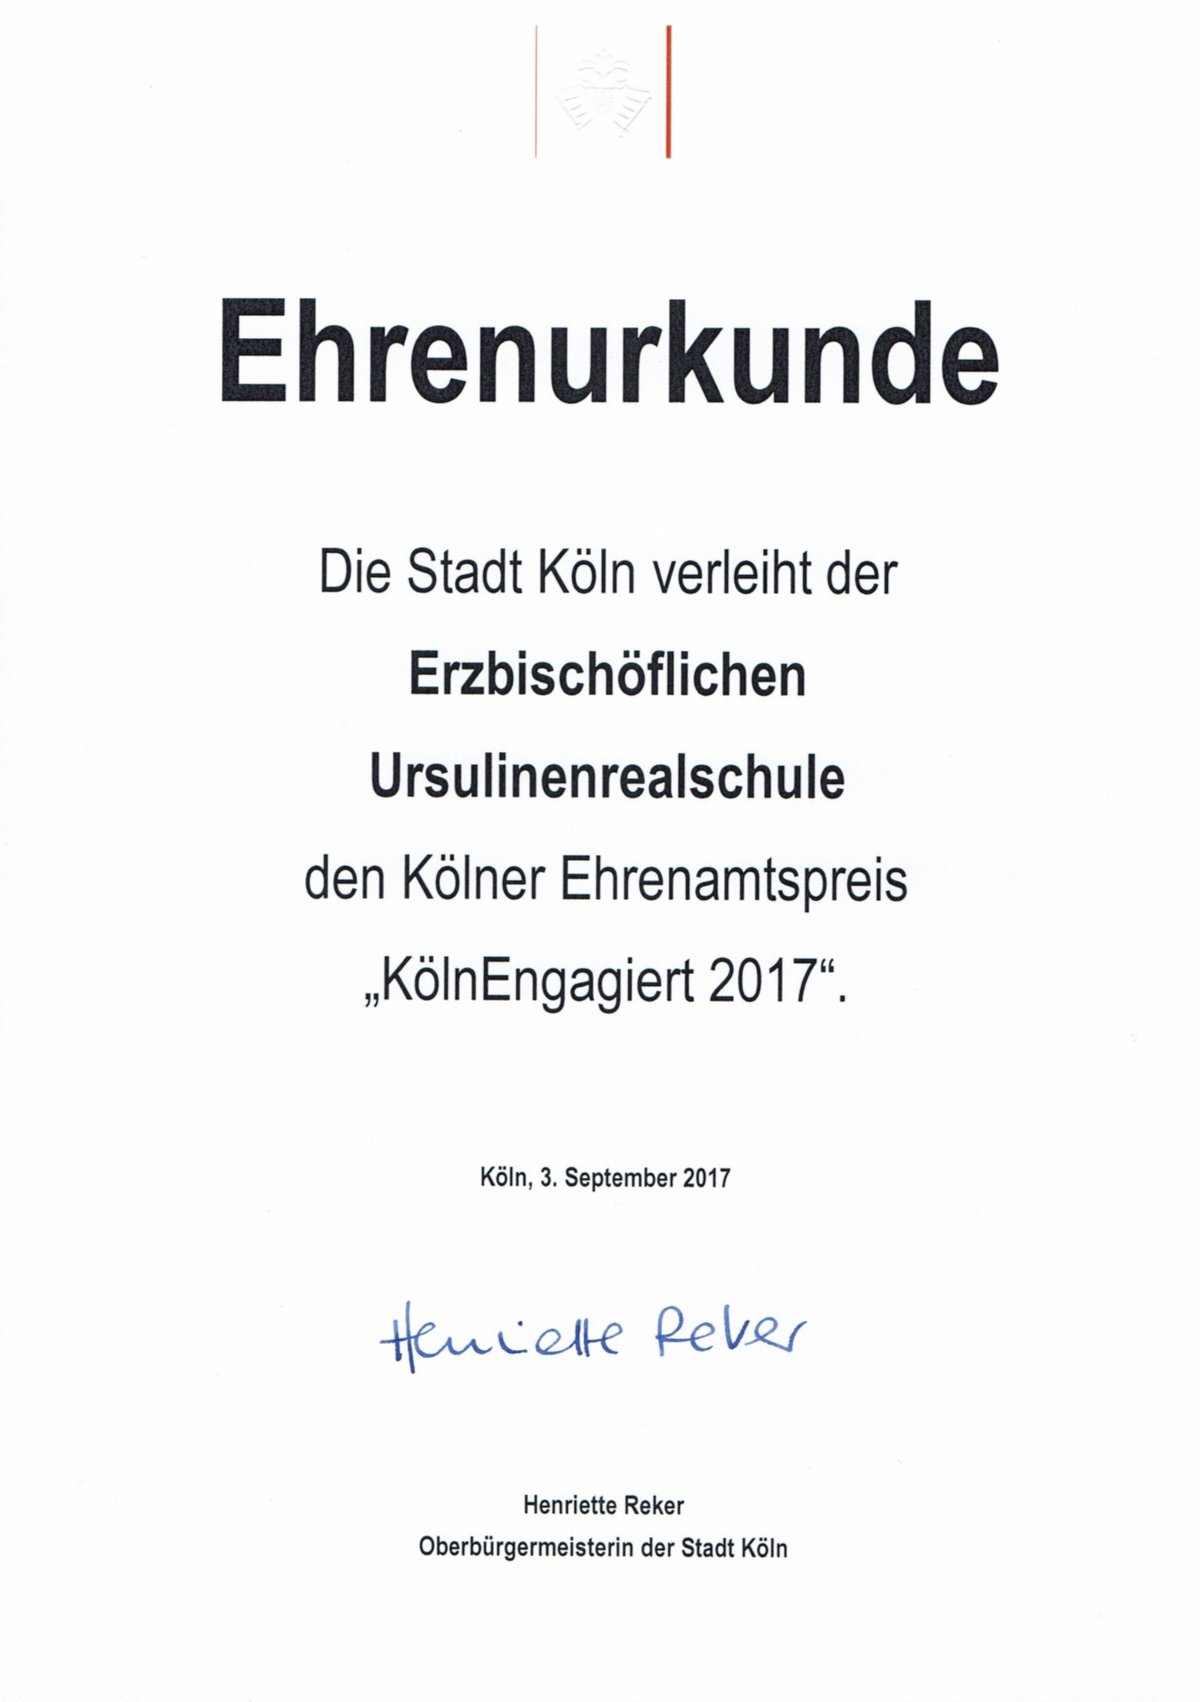 Ehrenurkunde KölnEngagiert 2017